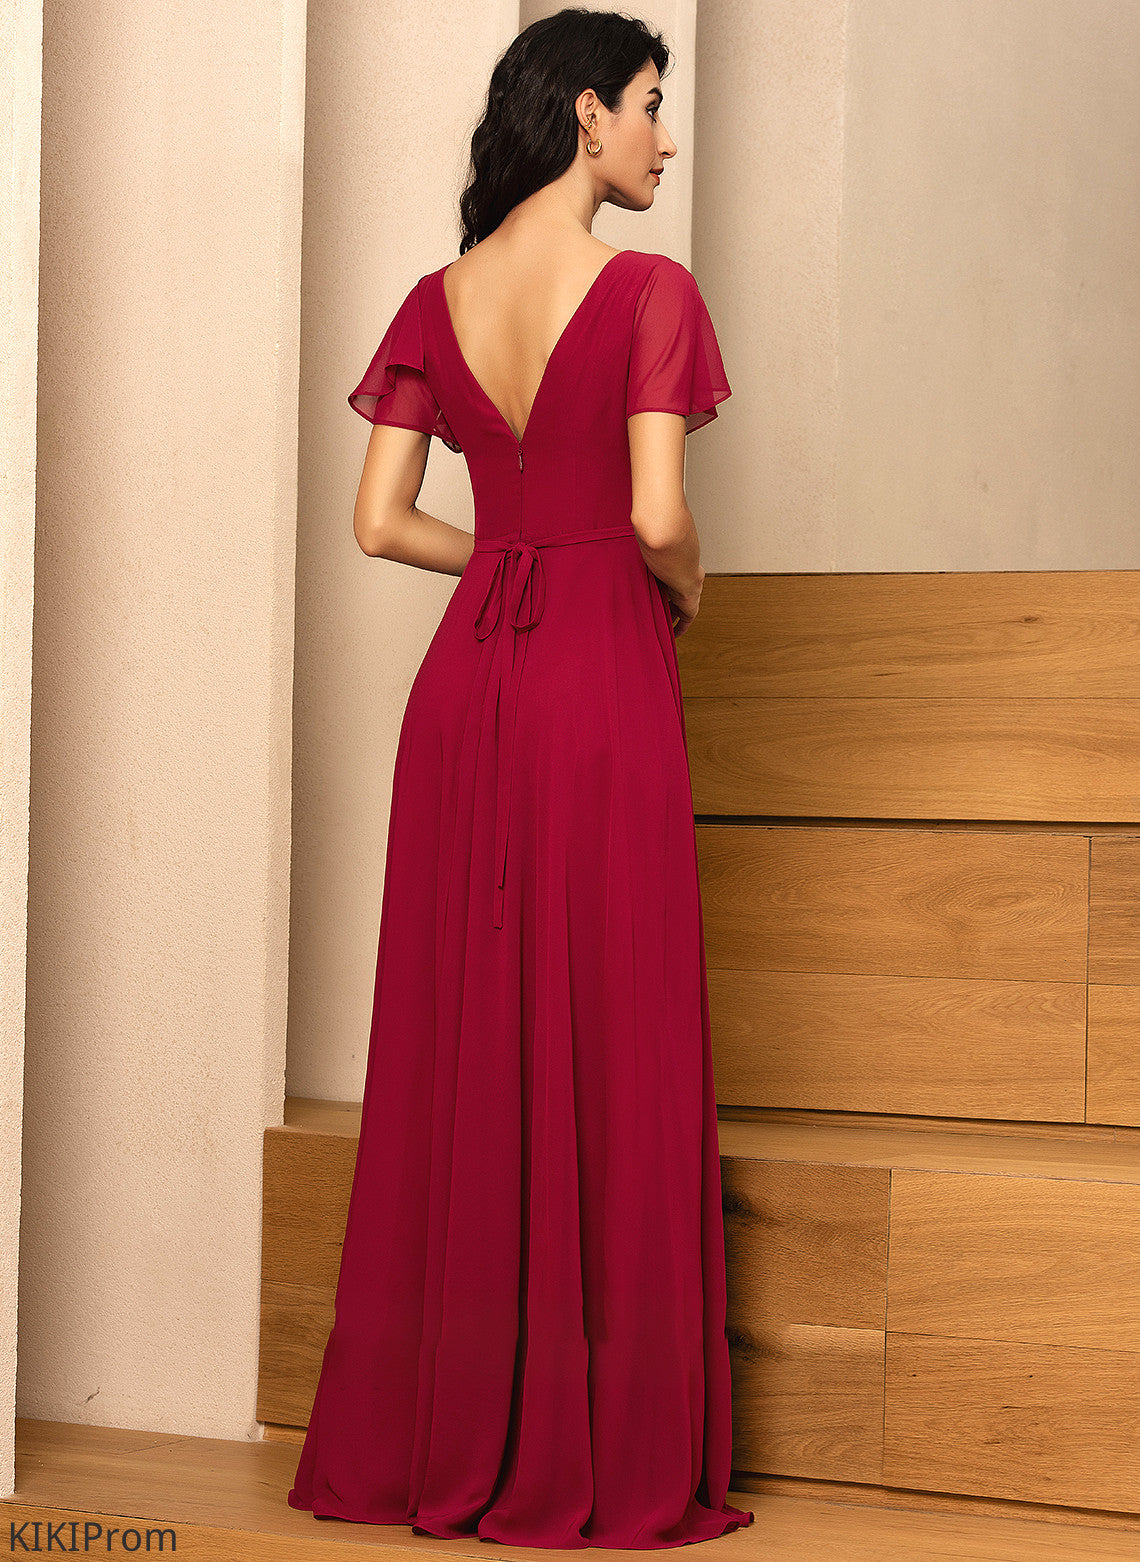 Straps A-Line Neckline Length V-neck Silhouette Fabric Floor-Length Mayra Natural Waist A-Line/Princess Sleeveless Bridesmaid Dresses